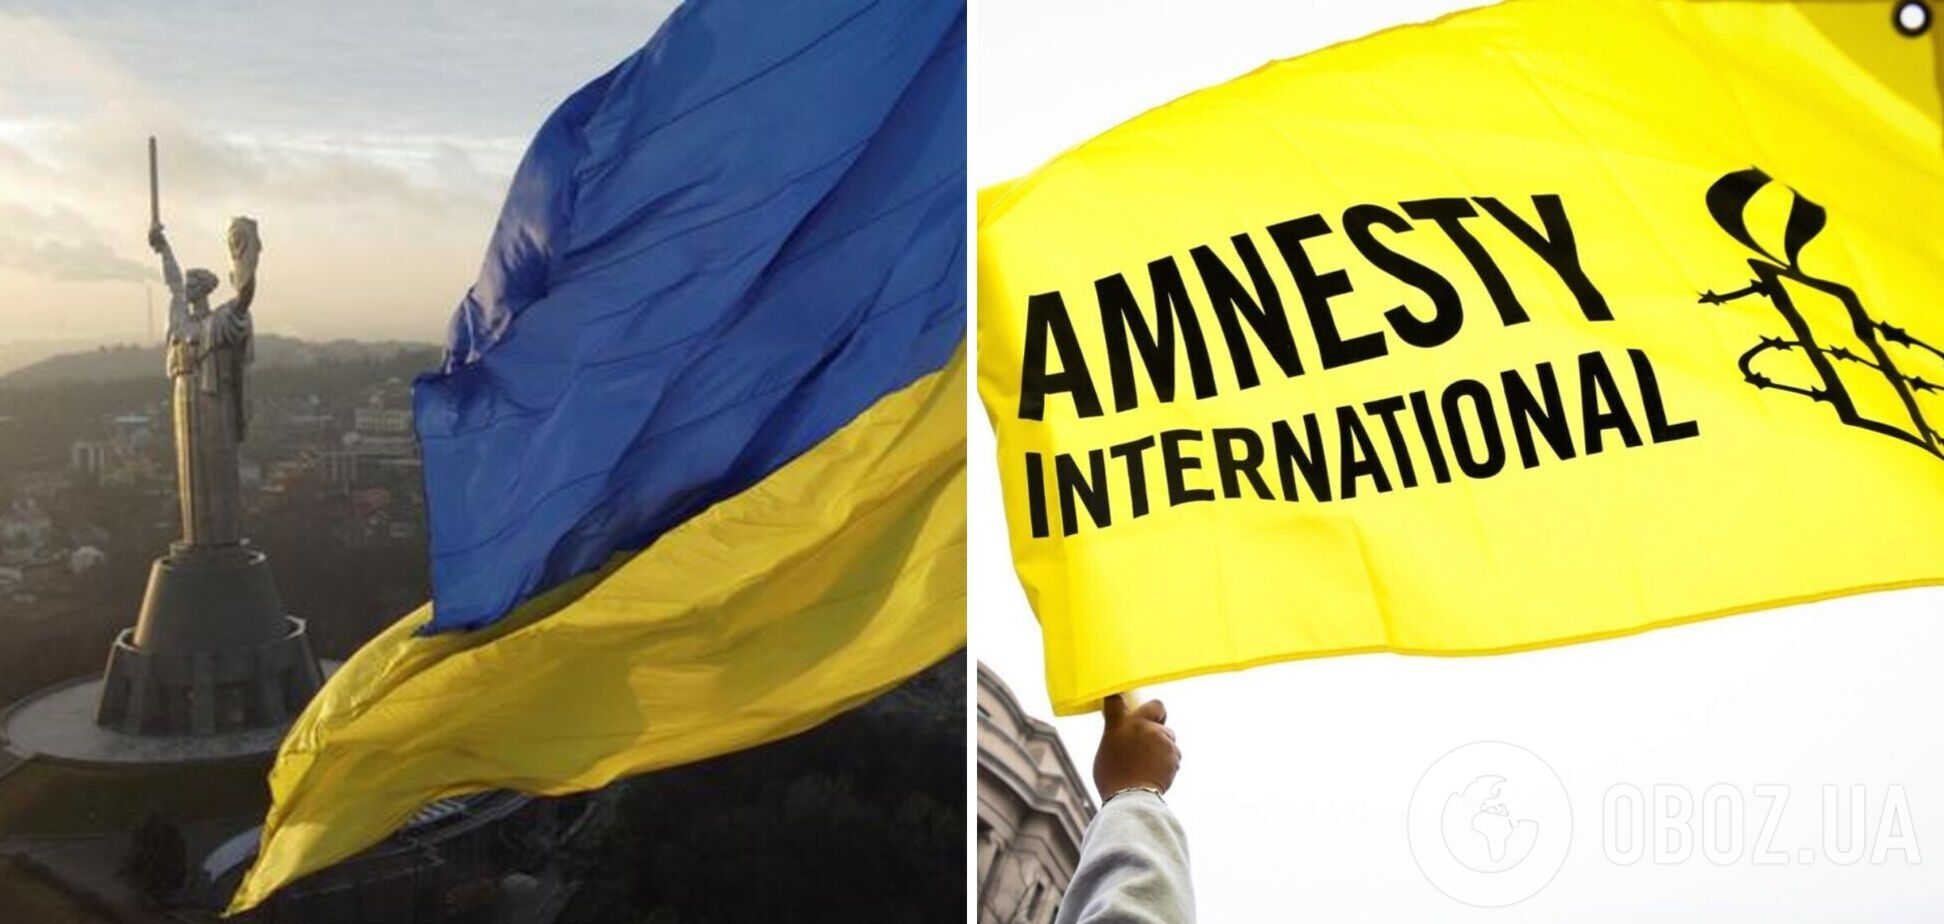 Украина отозвала аккредитации у сотрудников Amnesty International на следующий день после скандального доклада